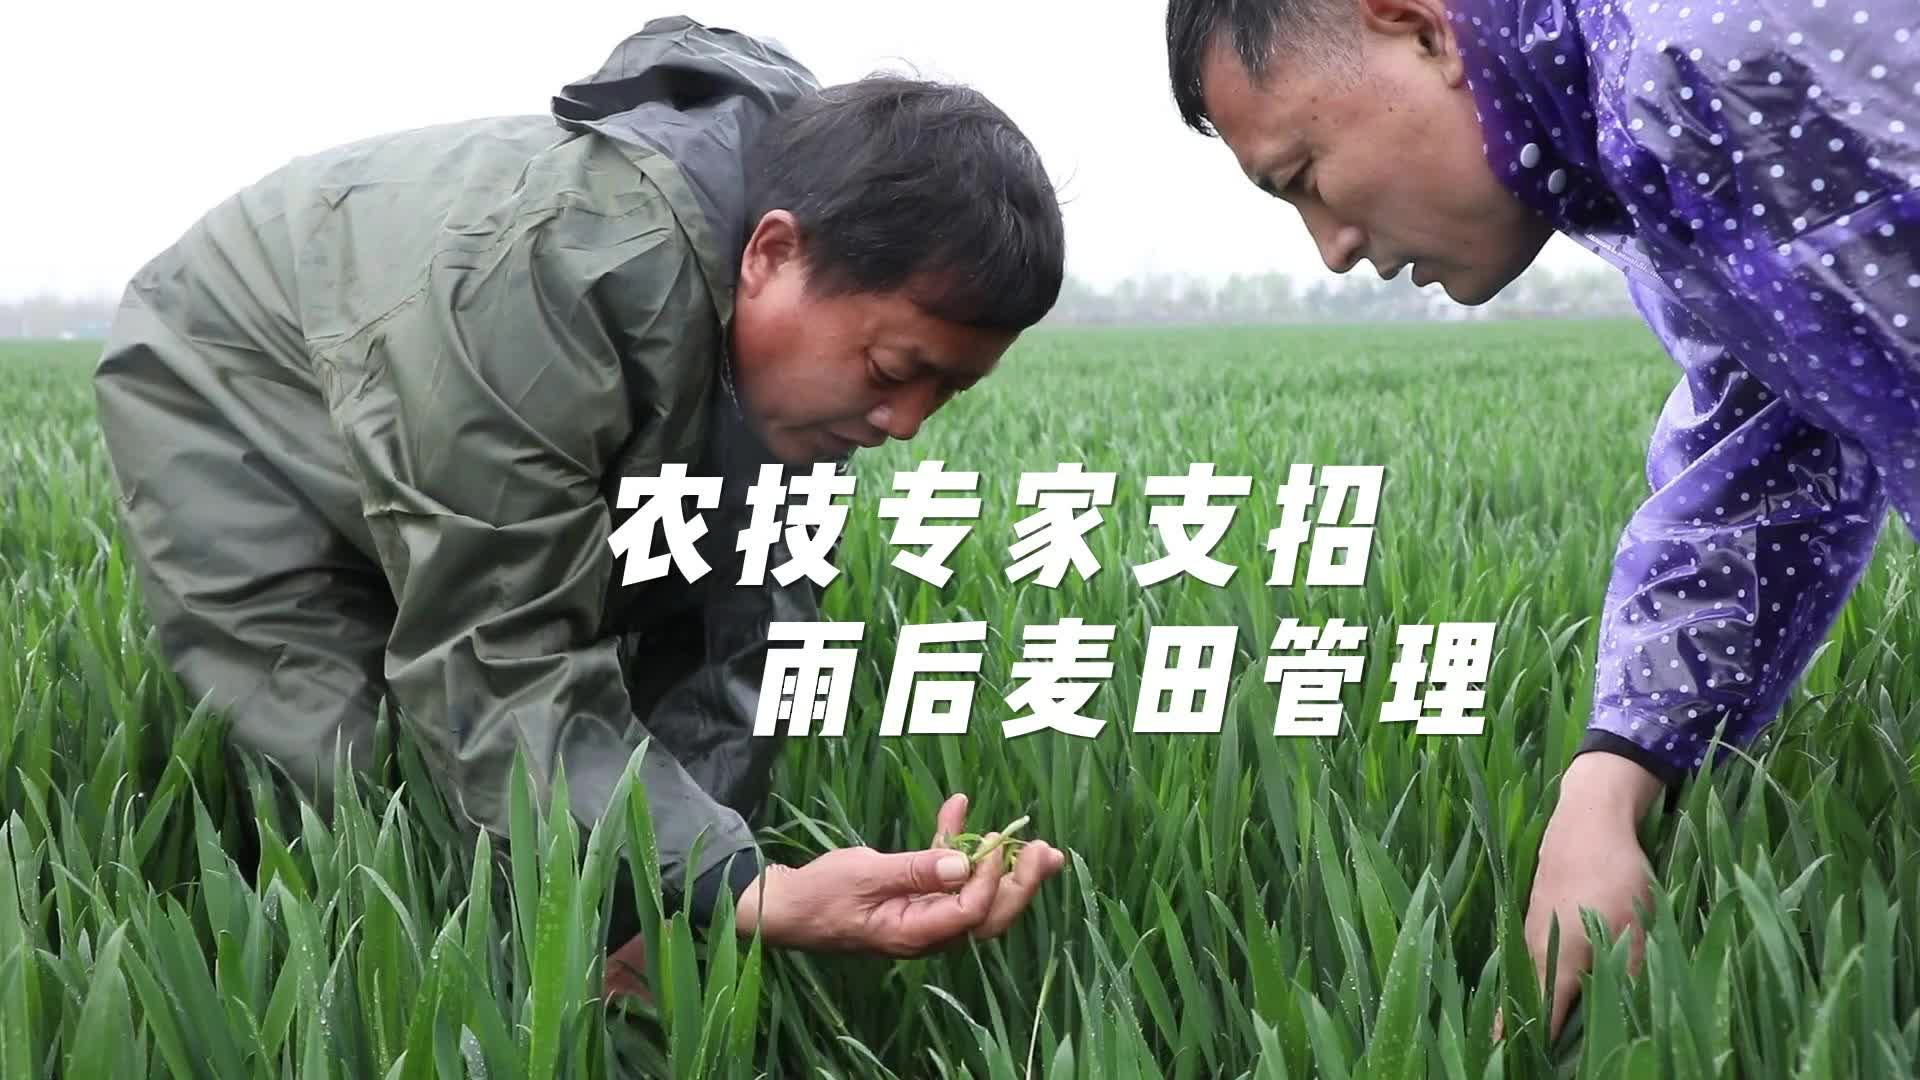 【邹视频·新闻】117秒|农技专家支招雨后麦田管理